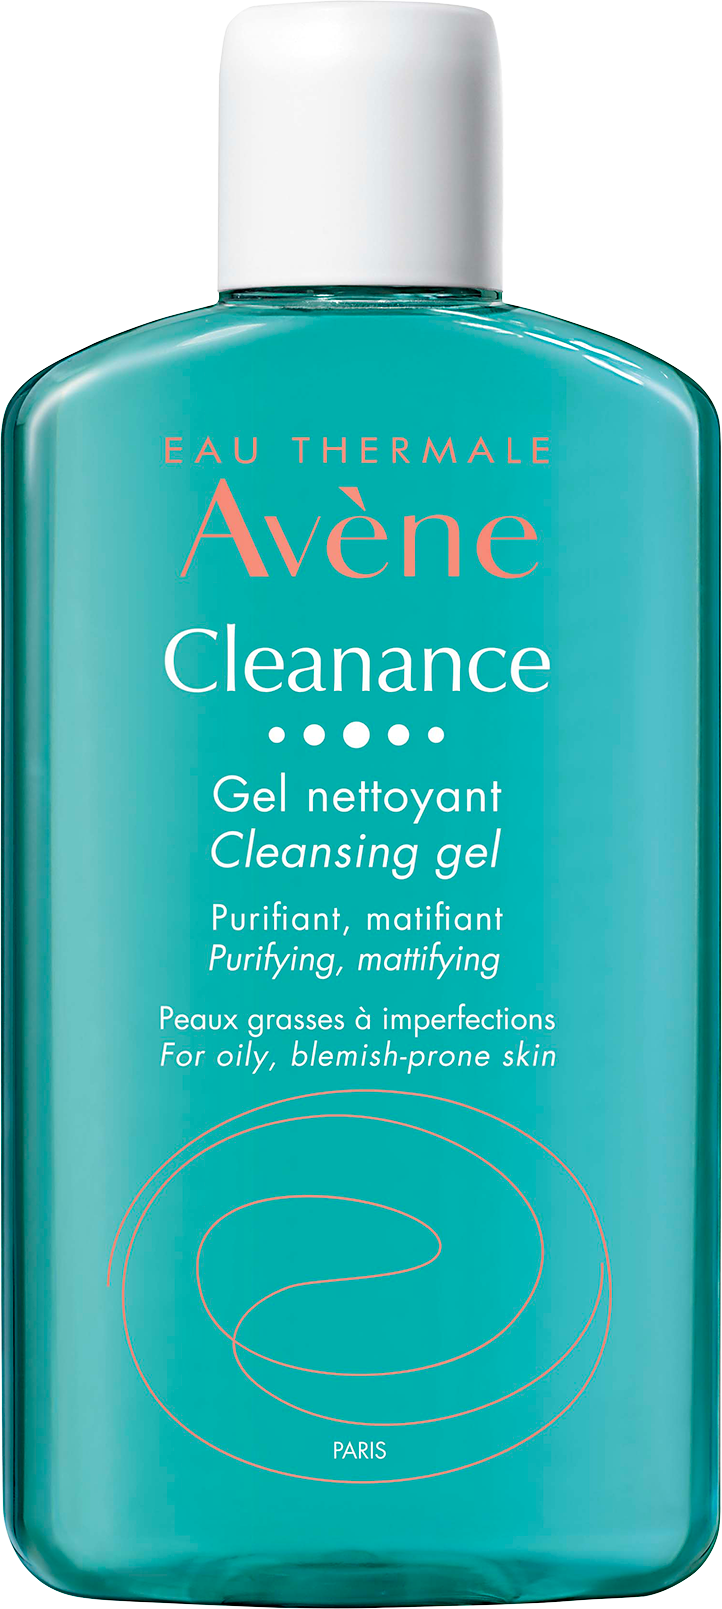 cleanance k ของ avene oil